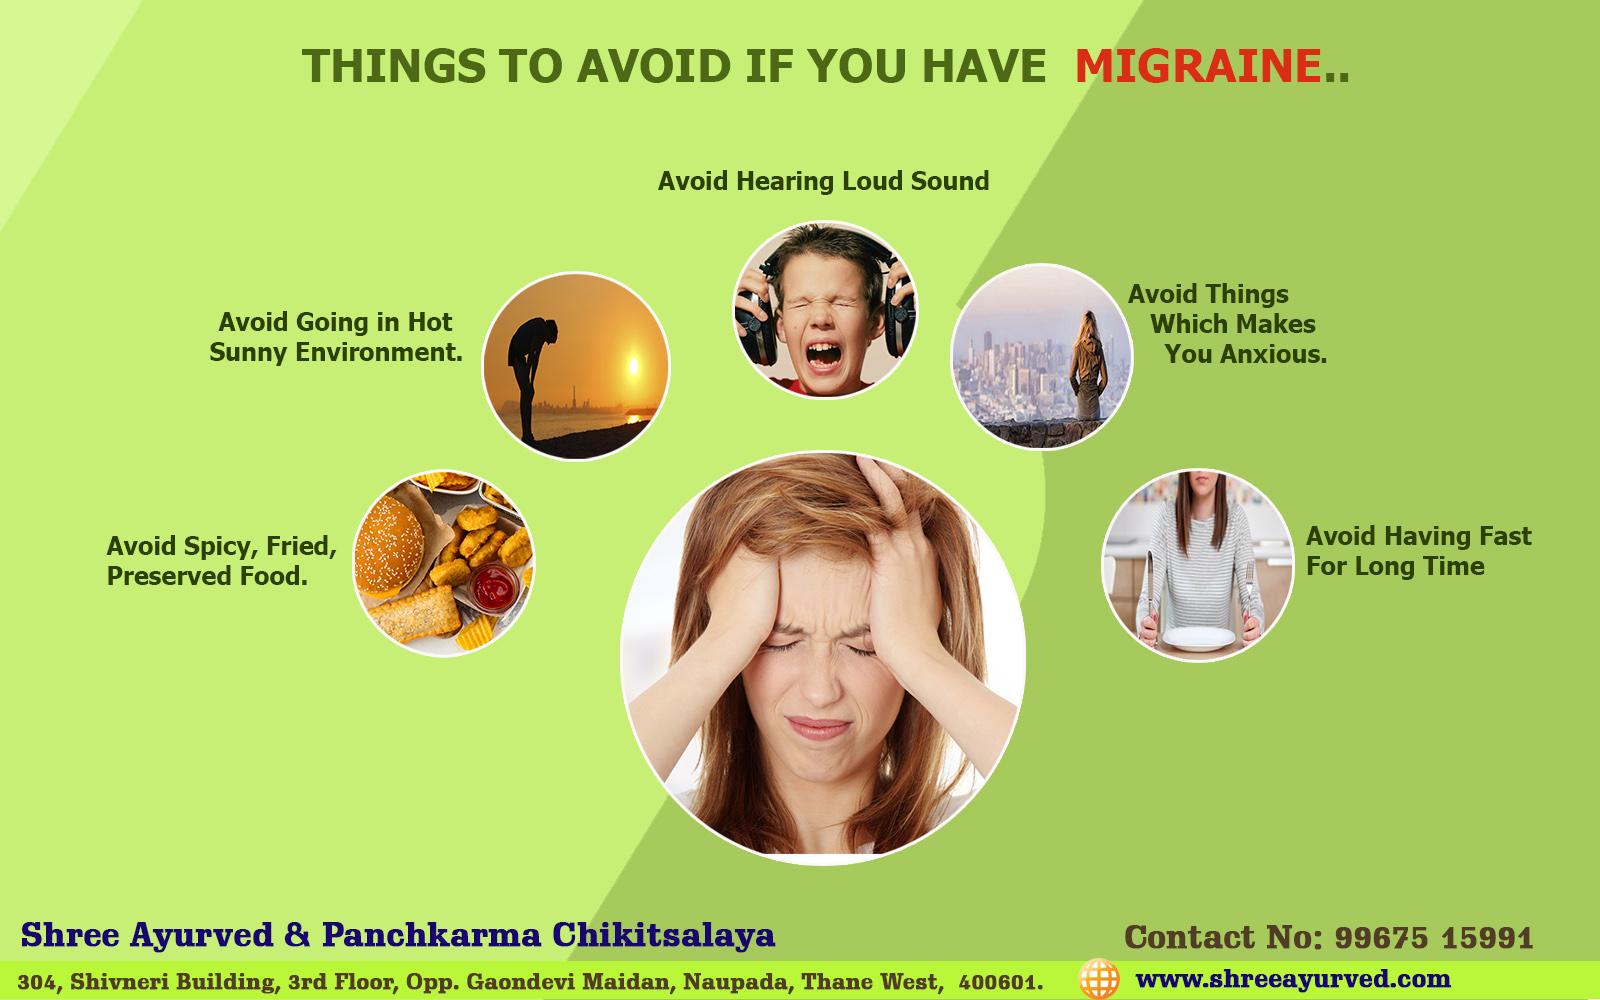 How to Avoid Migraine